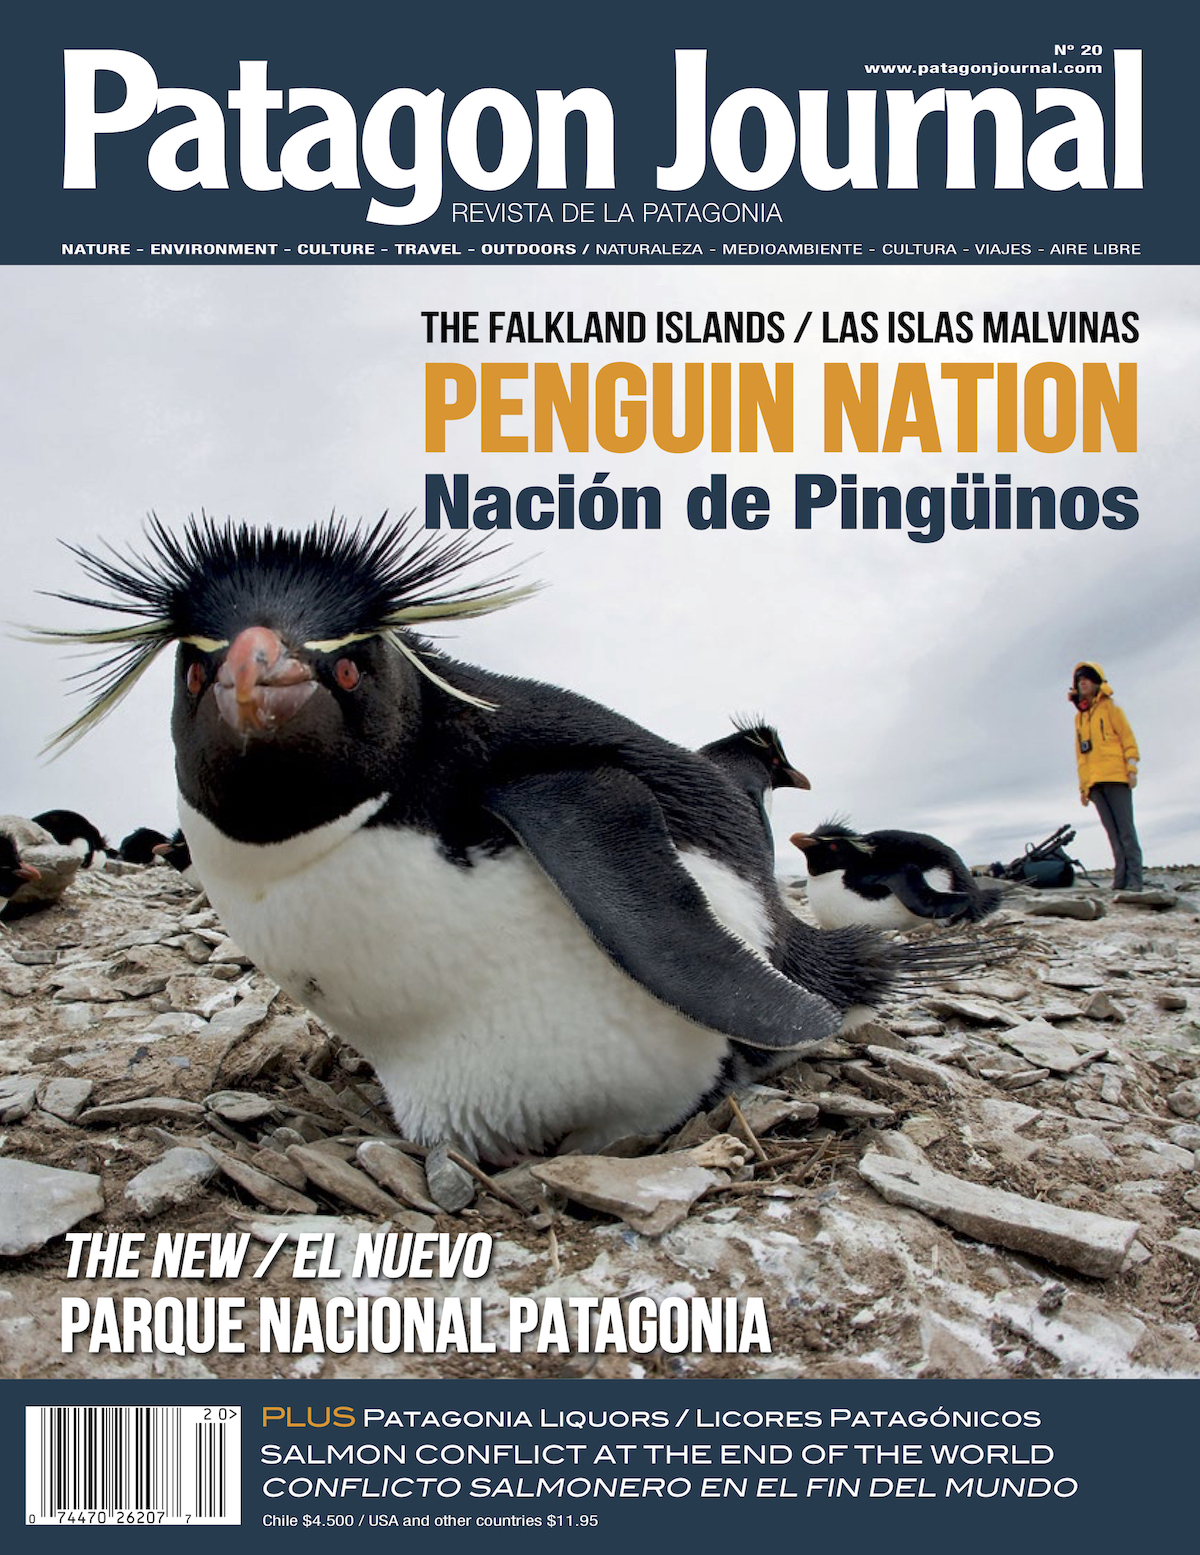 Edición 20 - Nación de Pinguinos | Patagonia´s Magazine: Patagon Journal